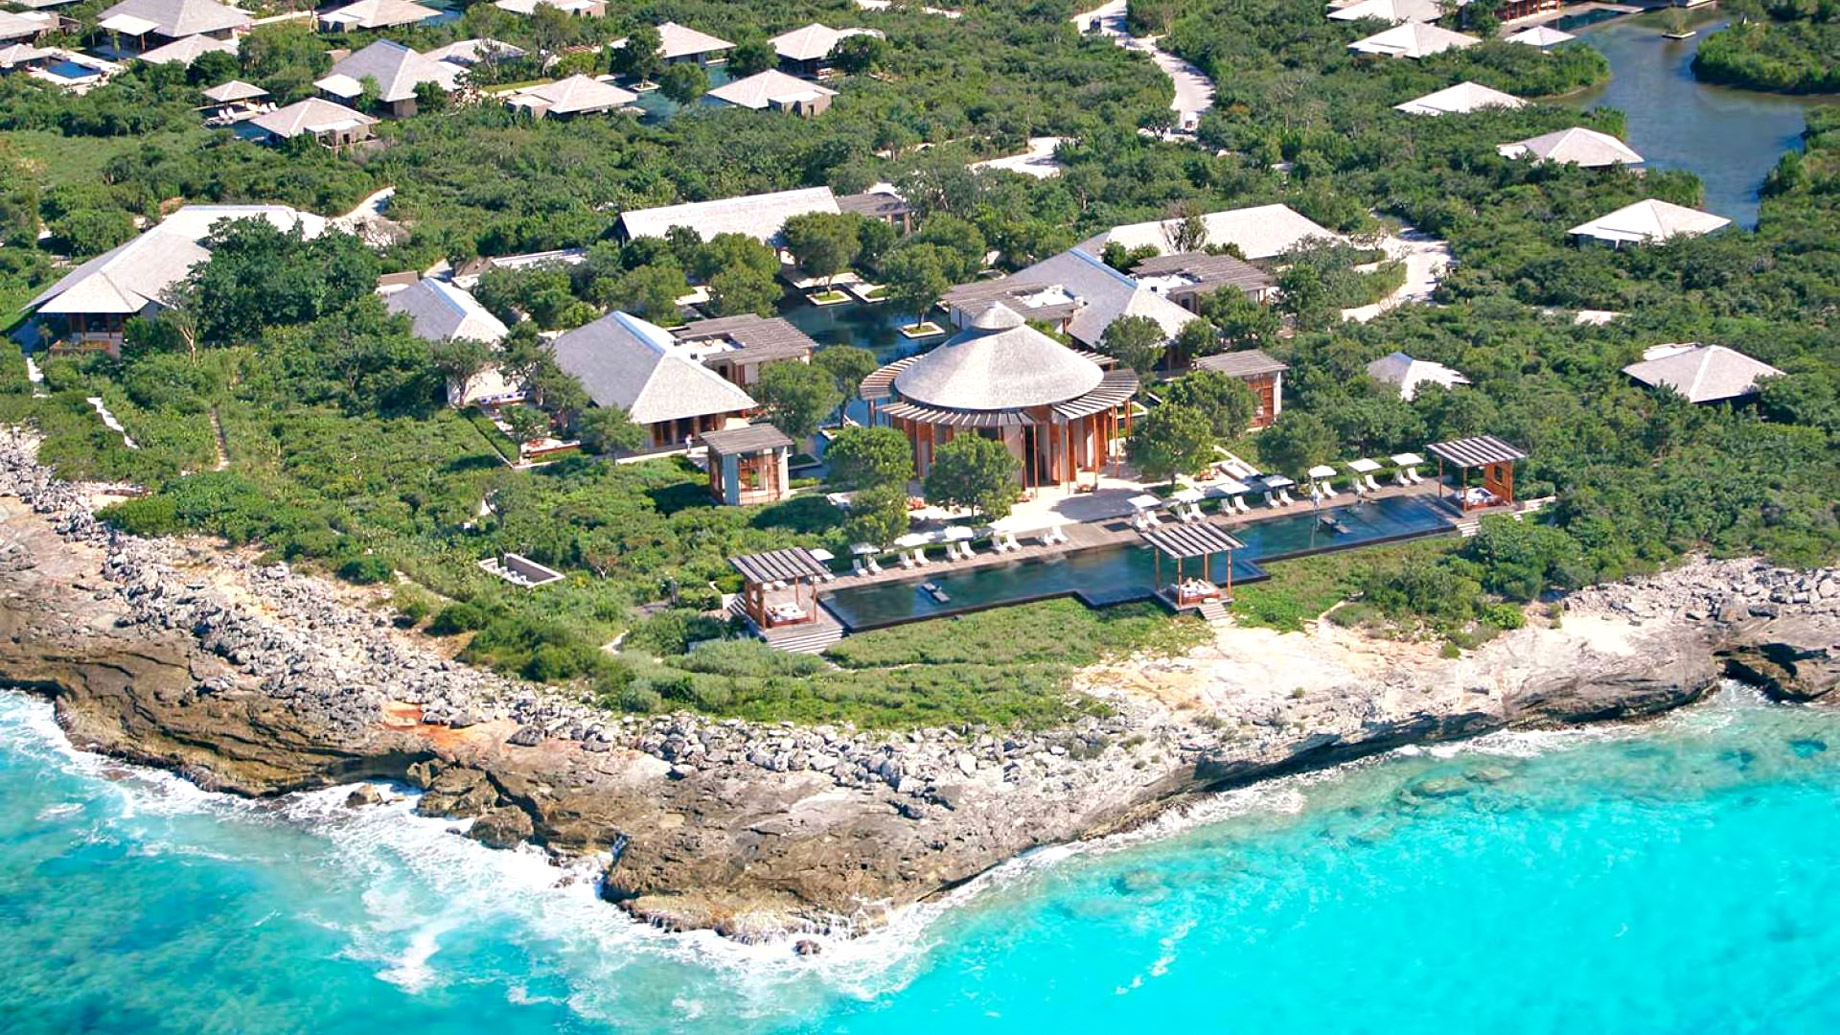 Amanyara Resort - Providenciales, Turks and Caicos Islands - Aerial